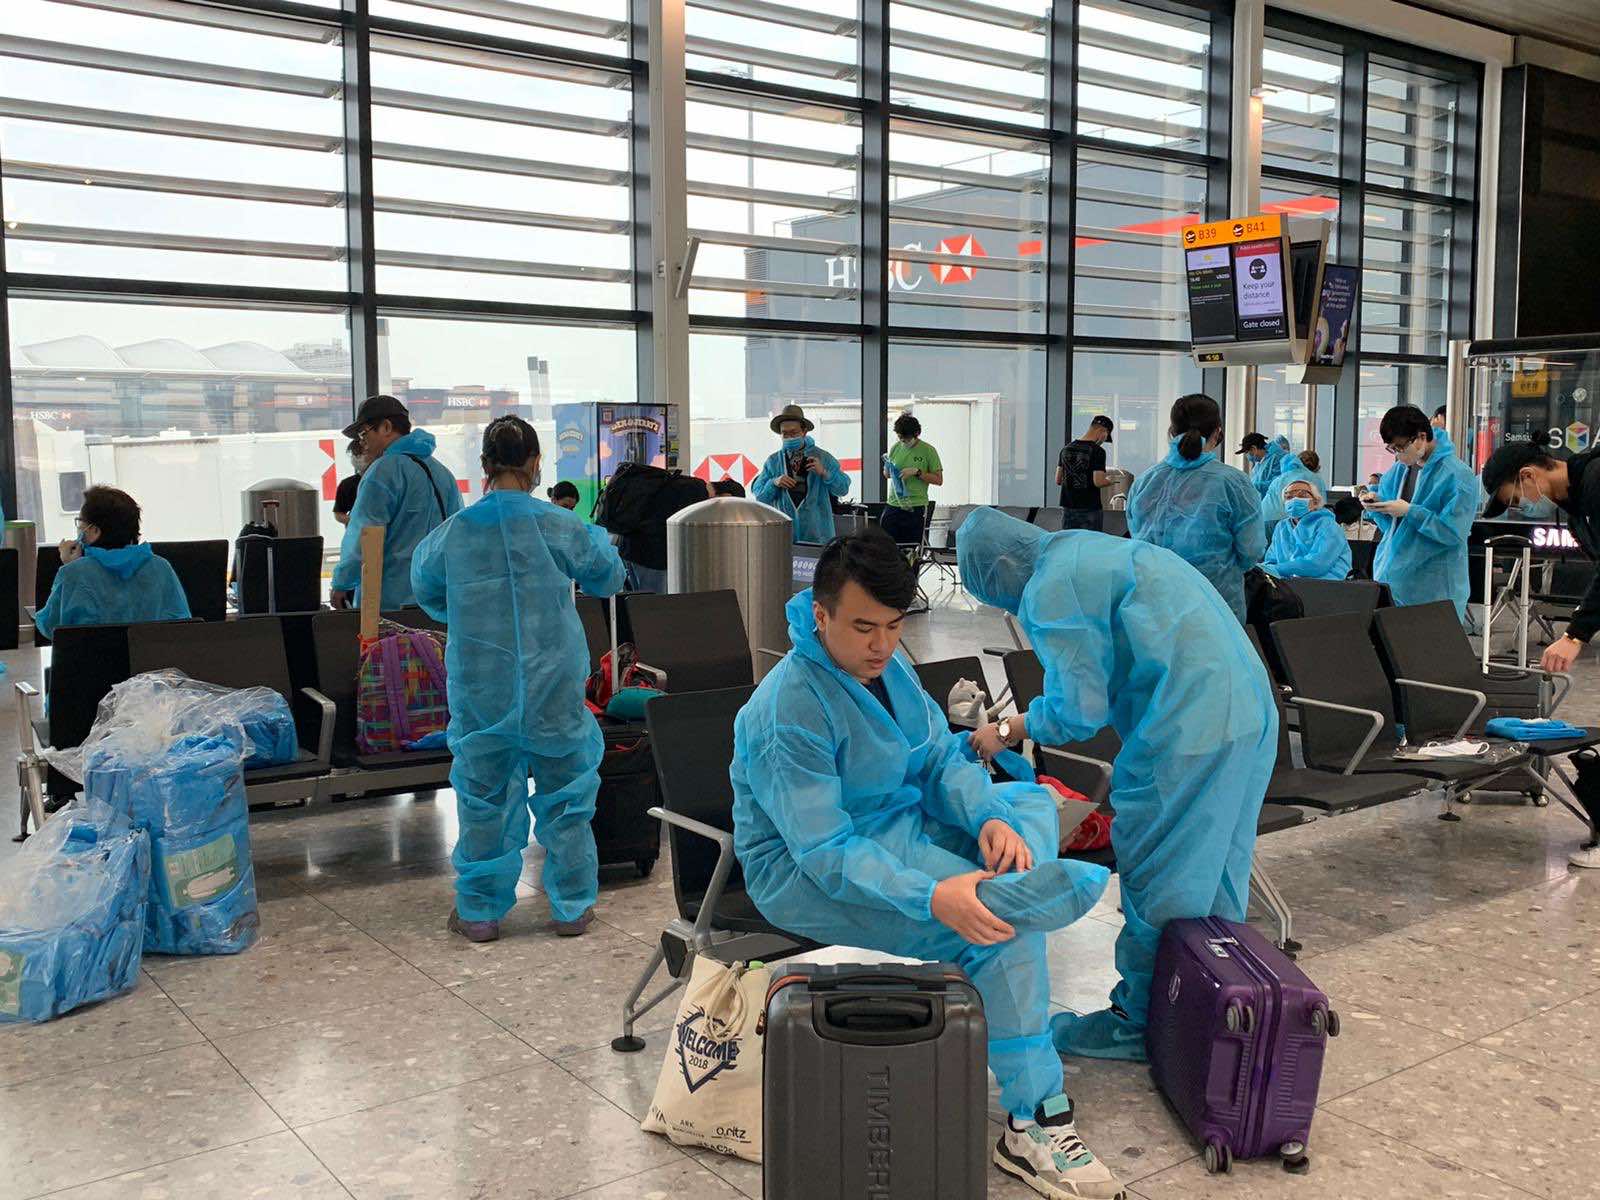 Chuyến bay đưa người Việt trở về được đảm bảo chặt chẽ về an ninh, an toàn, các quy định về phòng, chống dịch bệnh và vệ sinh dịch tễ.